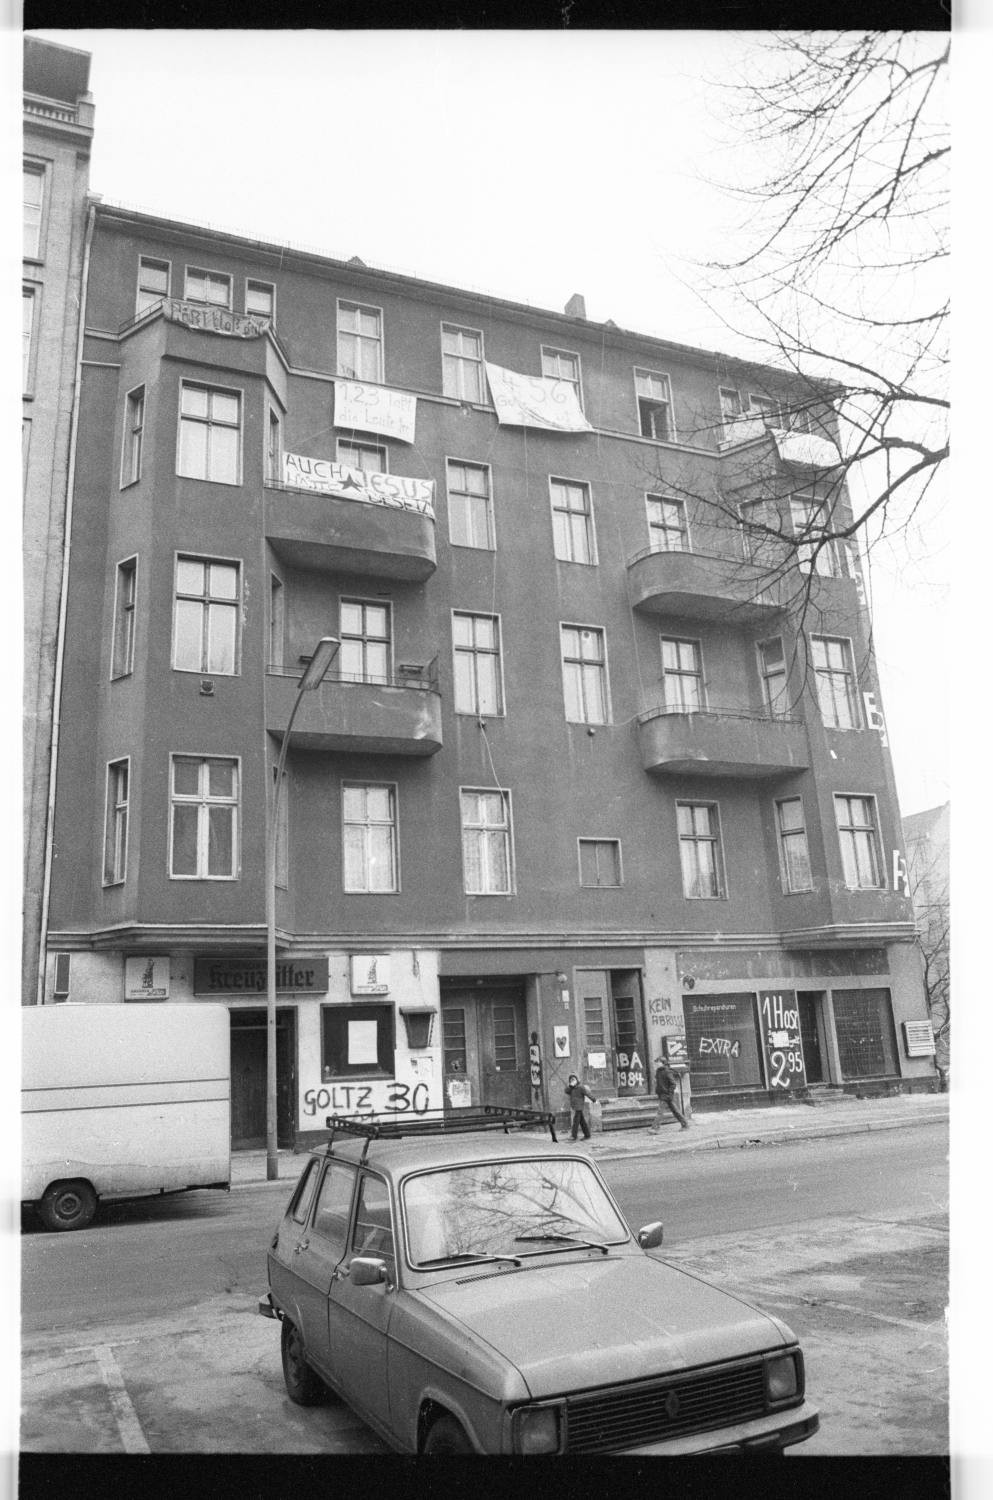 Kleinbildnegative: Besetztes Haus, Goltzstr. 30, 1981 (Museen Tempelhof-Schöneberg/Jürgen Henschel RR-F)